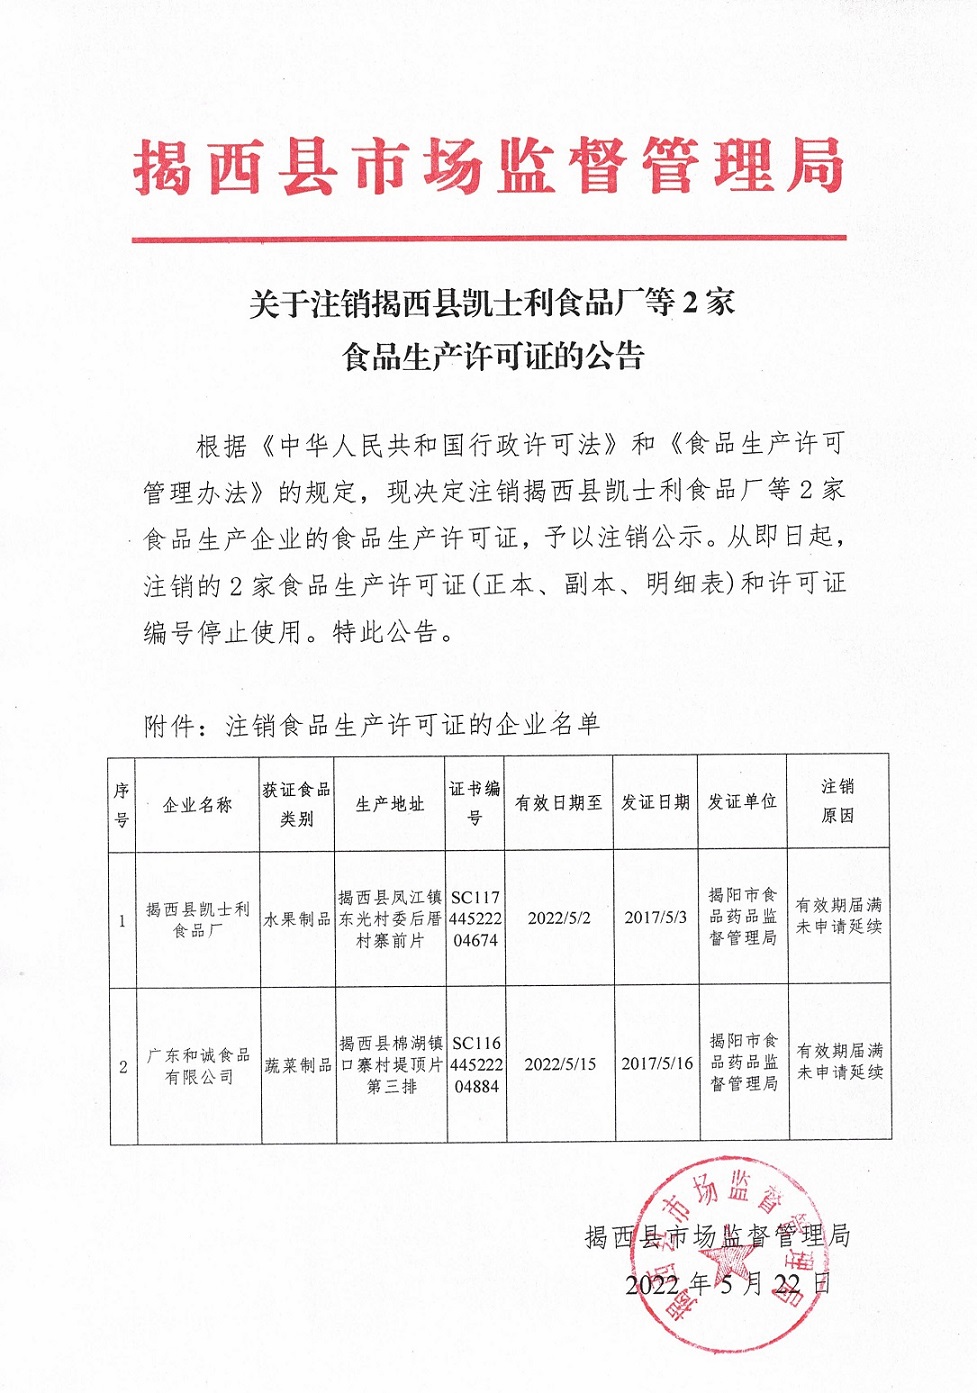 关于注销揭西县凯士利食品厂等2家食品生产许可证的公告.jpg